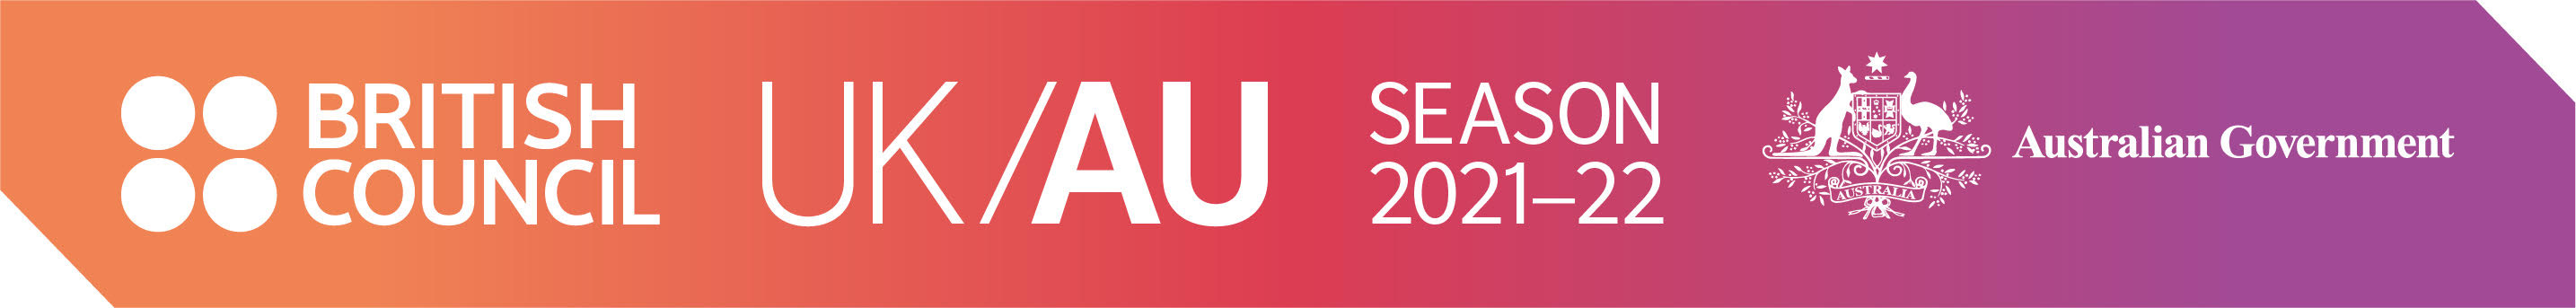 uk/aus logo